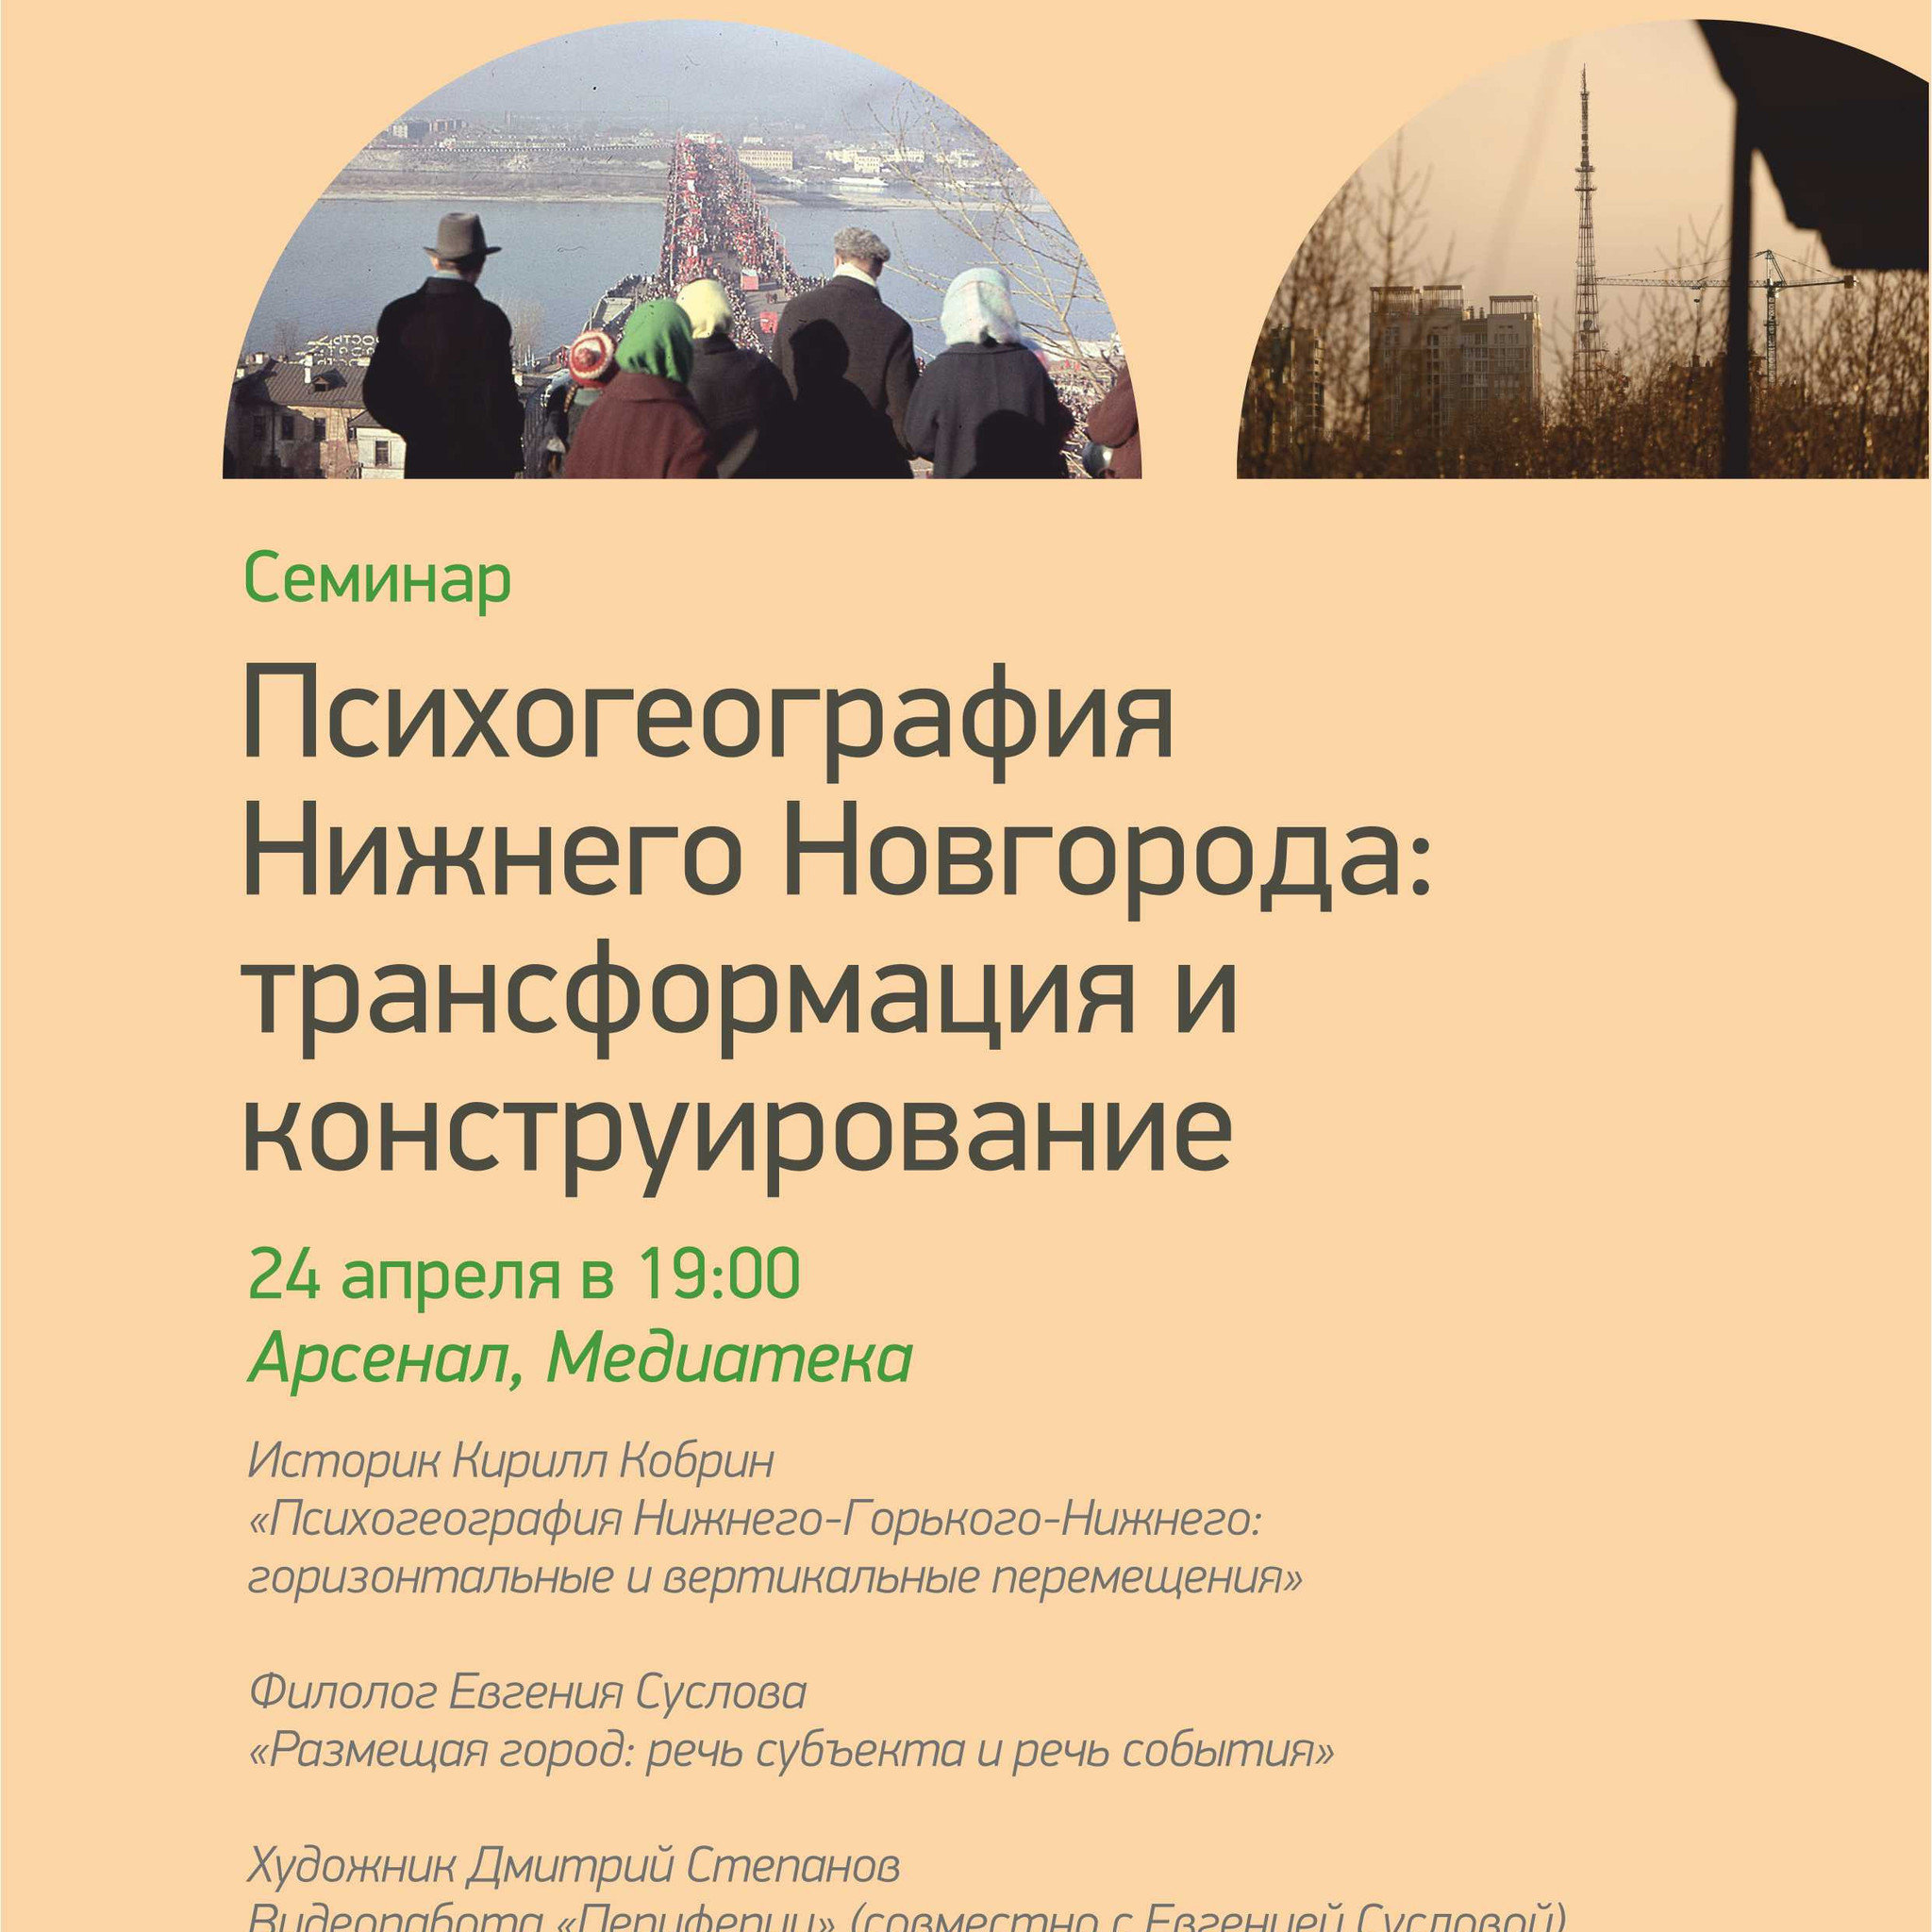 Seminar Psychogeography Nizhny Novgorod: transformation and construction